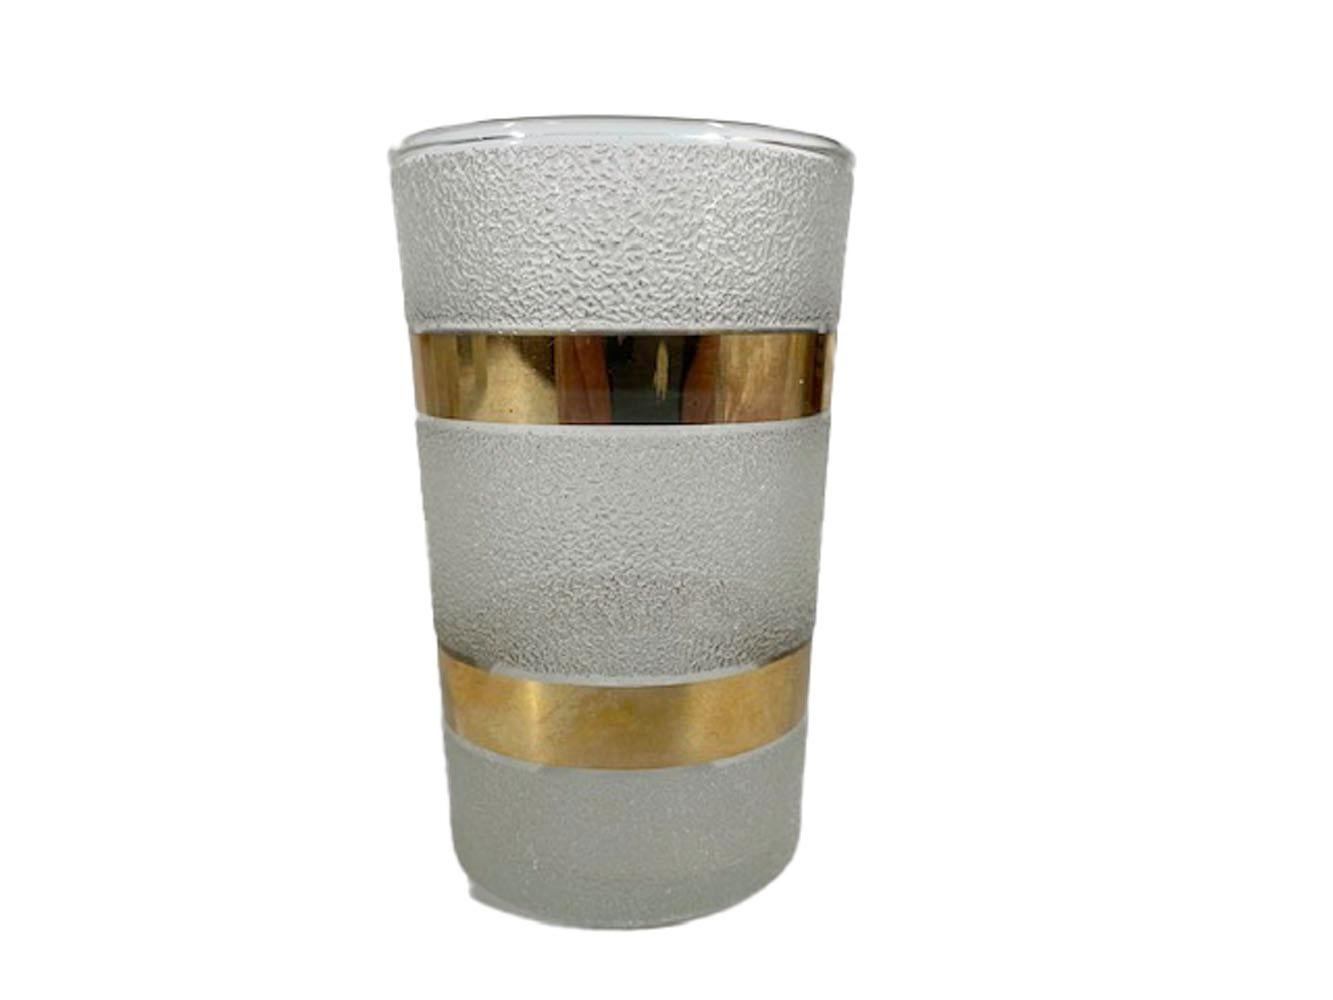 Shaker Art Déco et quatre verres à cocktail présentant deux larges bandes d'or 22k sur un fond givré texturé. Très probablement Macbeth-Evans après qu'elle ait été acquise par et exploitée comme une division de Corning Glass.